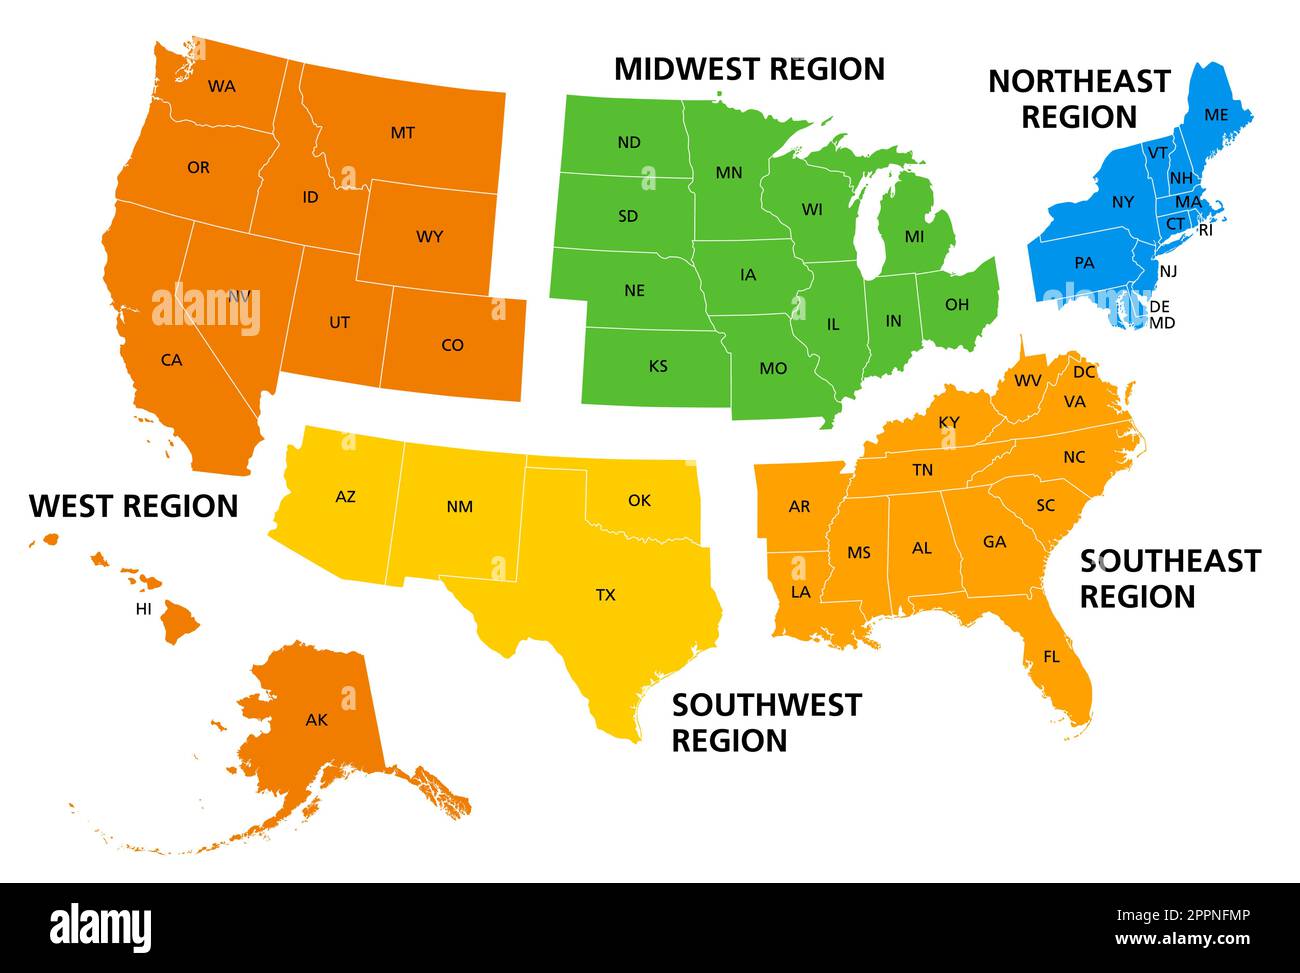 Etats-Unis d'Amérique, régions géographiques, carte politique colorée Illustration de Vecteur